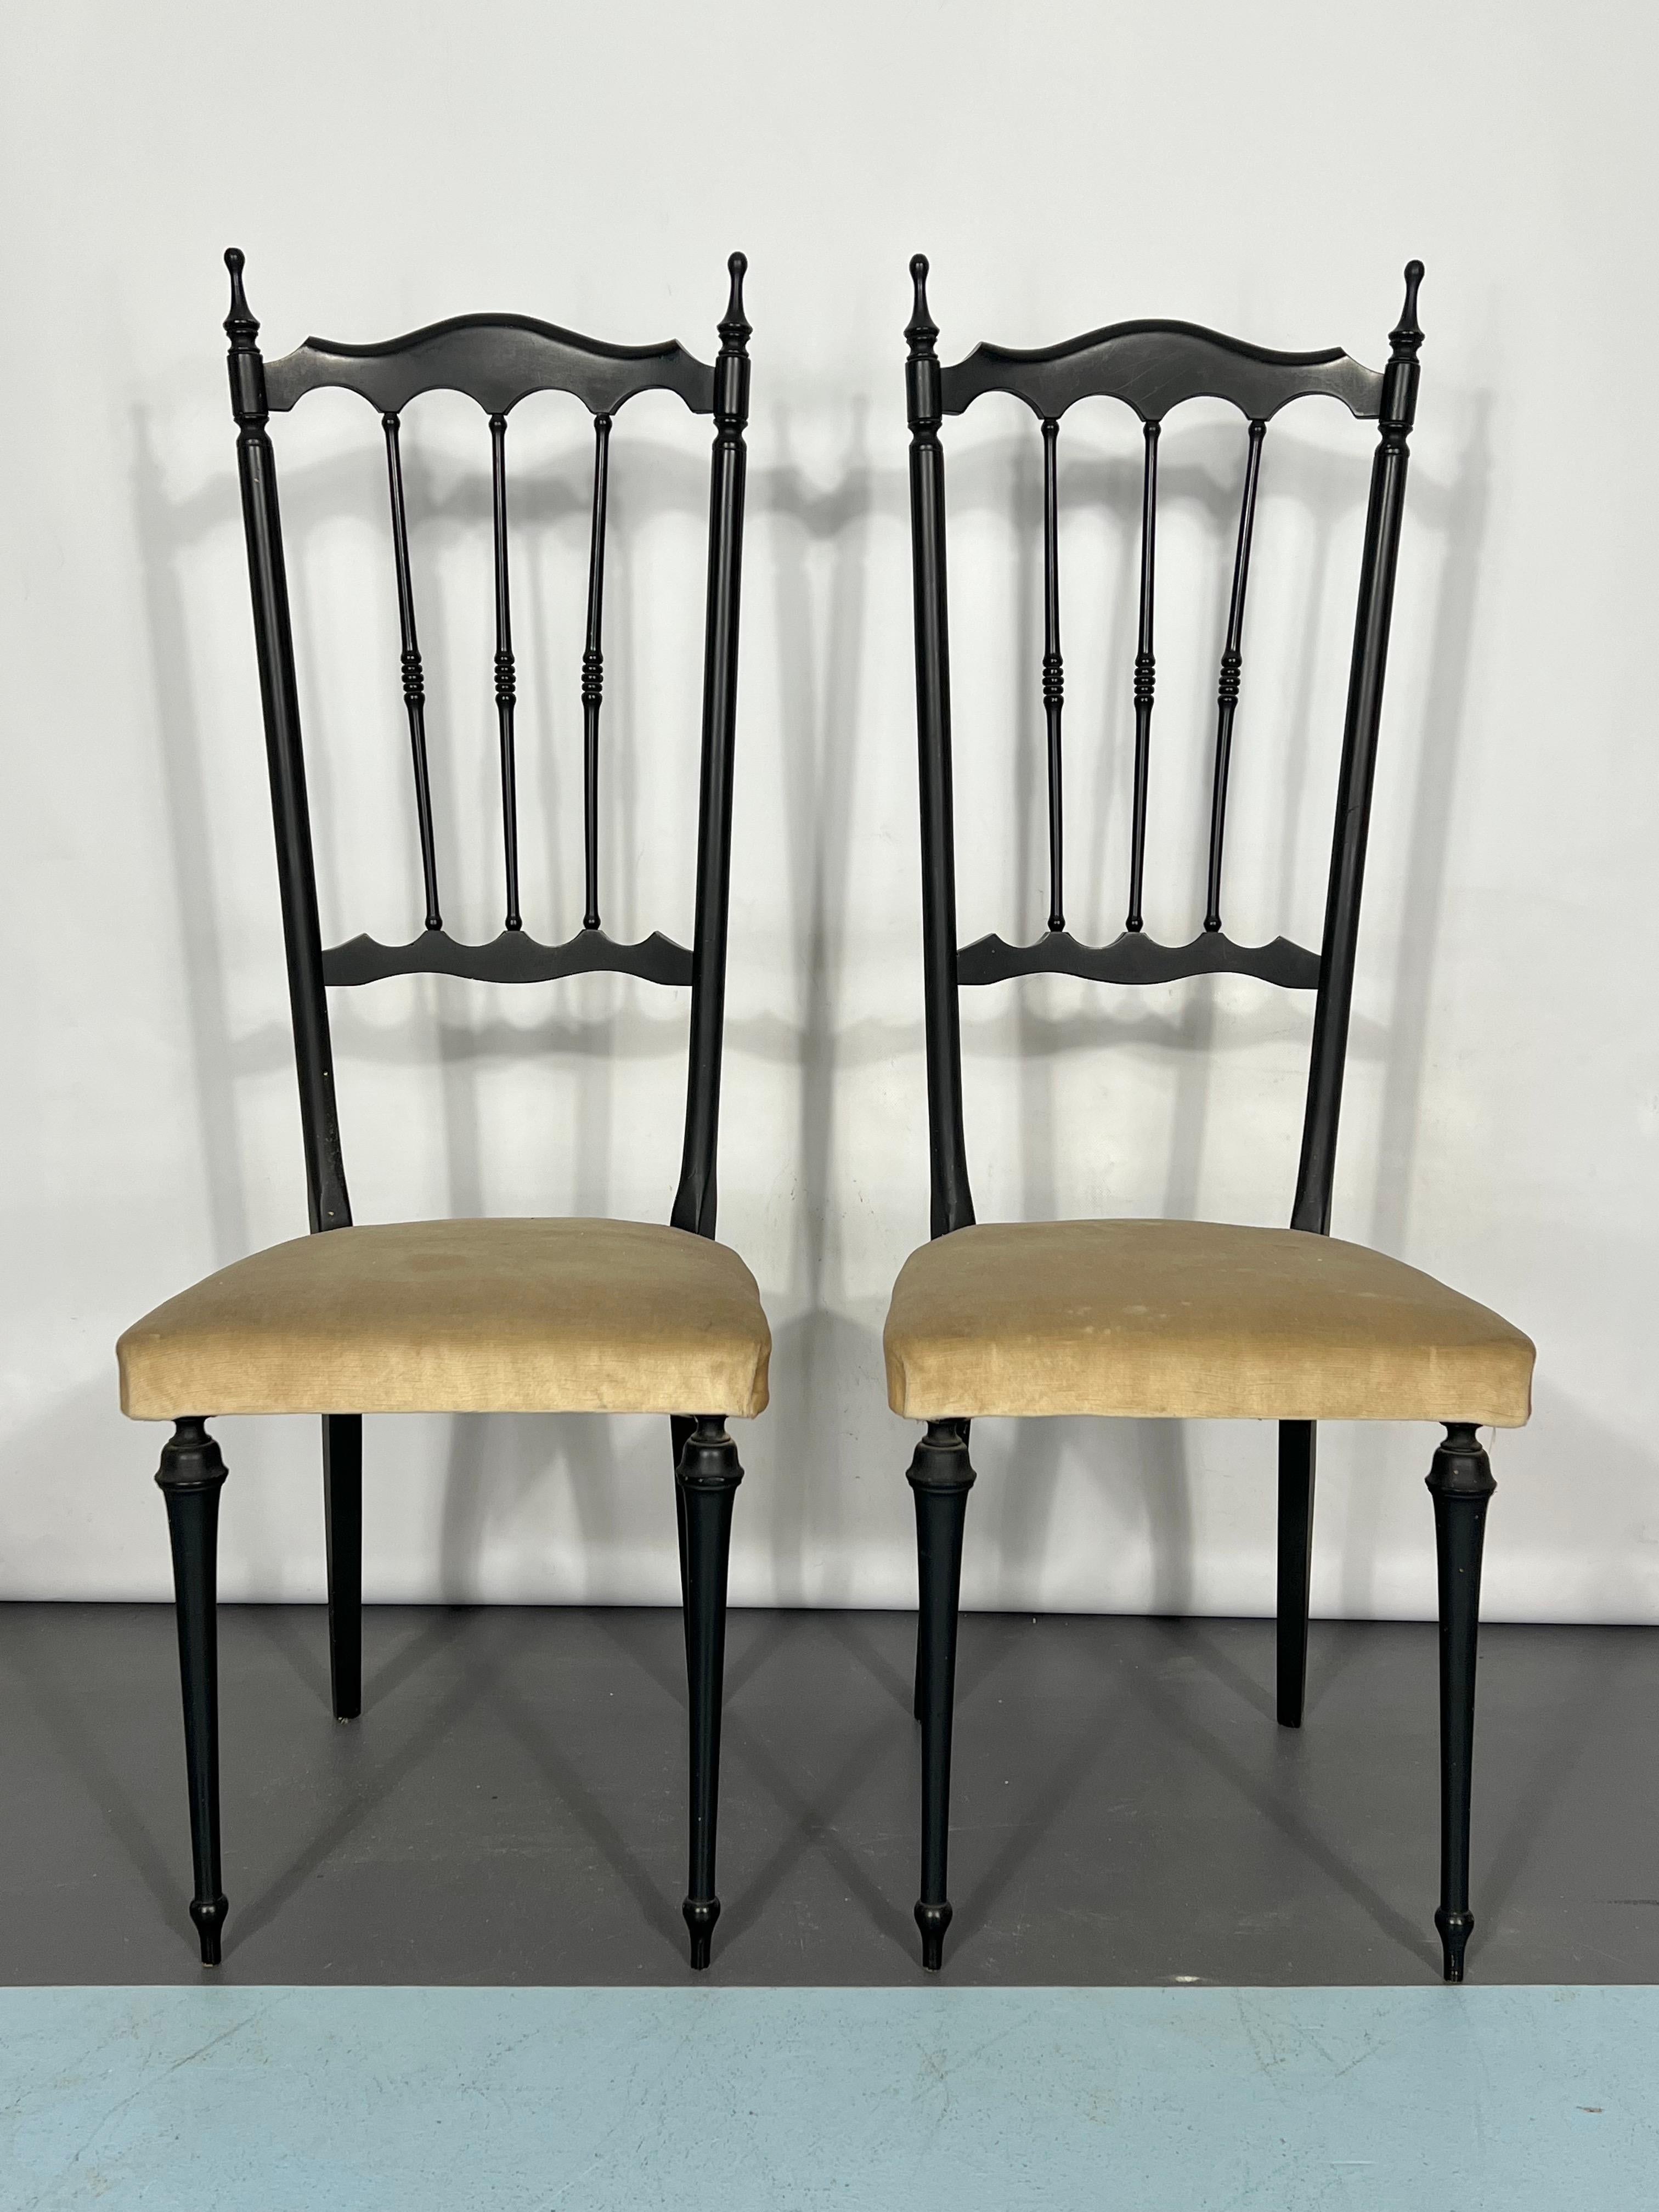 Bon état vintage avec traces d'âge et d'utilisation pour cet ensemble de deux chaises d'appoint de Chiavari, produites en Italie dans les années 50.